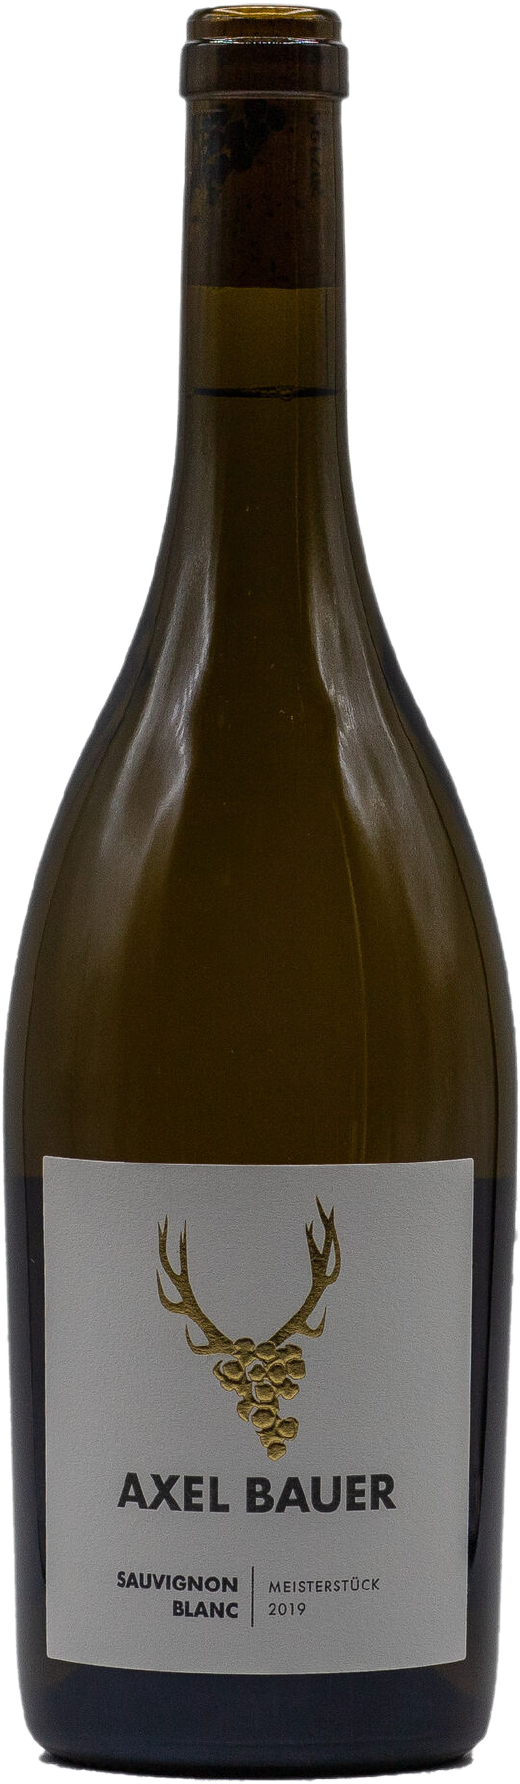 2019 Sauvignon Blanc "Meisterstück"